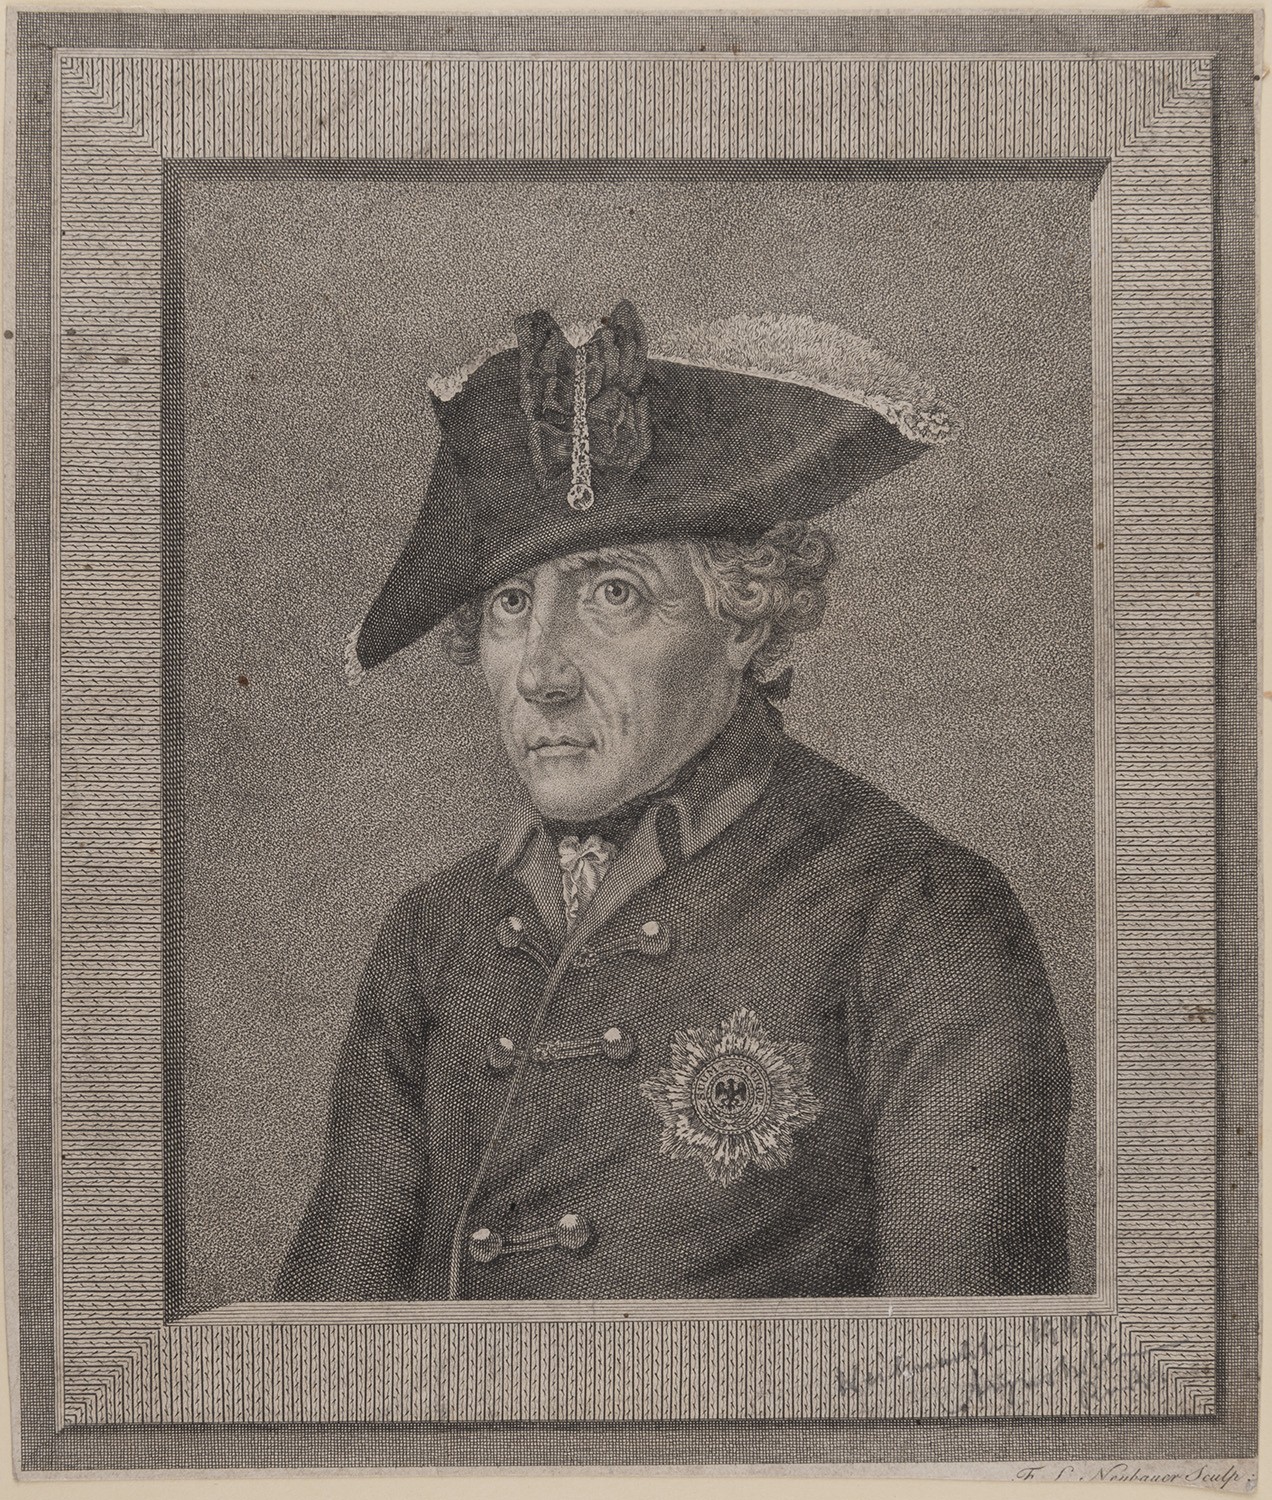 August Wilhelm, Prinz von Preußen (1722-1758), preuß. General (Landesgeschichtliche Vereinigung für die Mark Brandenburg e.V., Archiv CC BY)